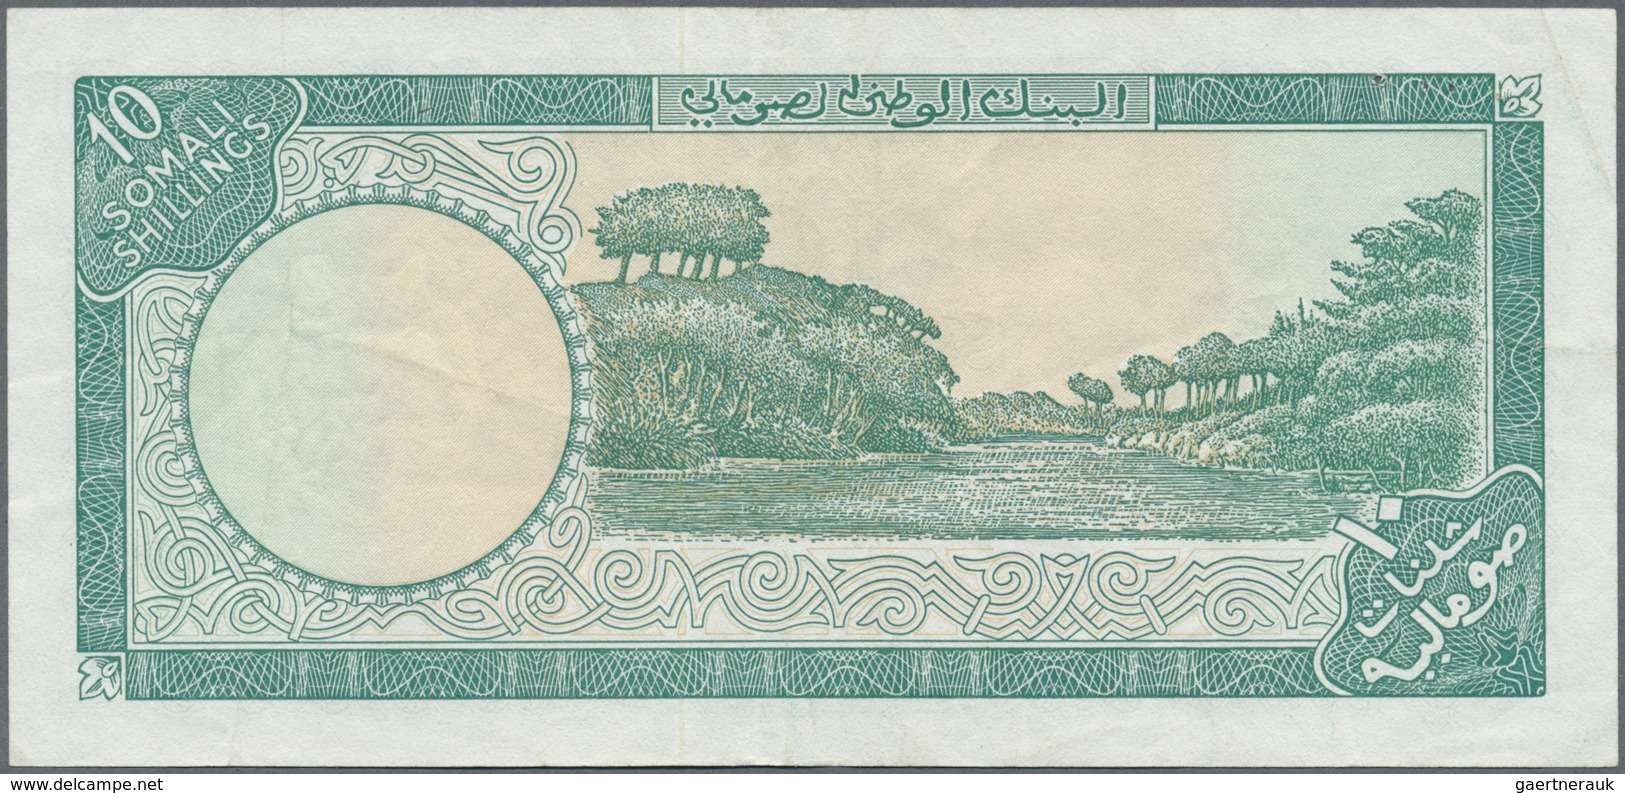 Somalia: Banca Nazionale Somala 10 Scellini 1968, P.10, Vertically Folded, Some Other Minor Creases - Somalia